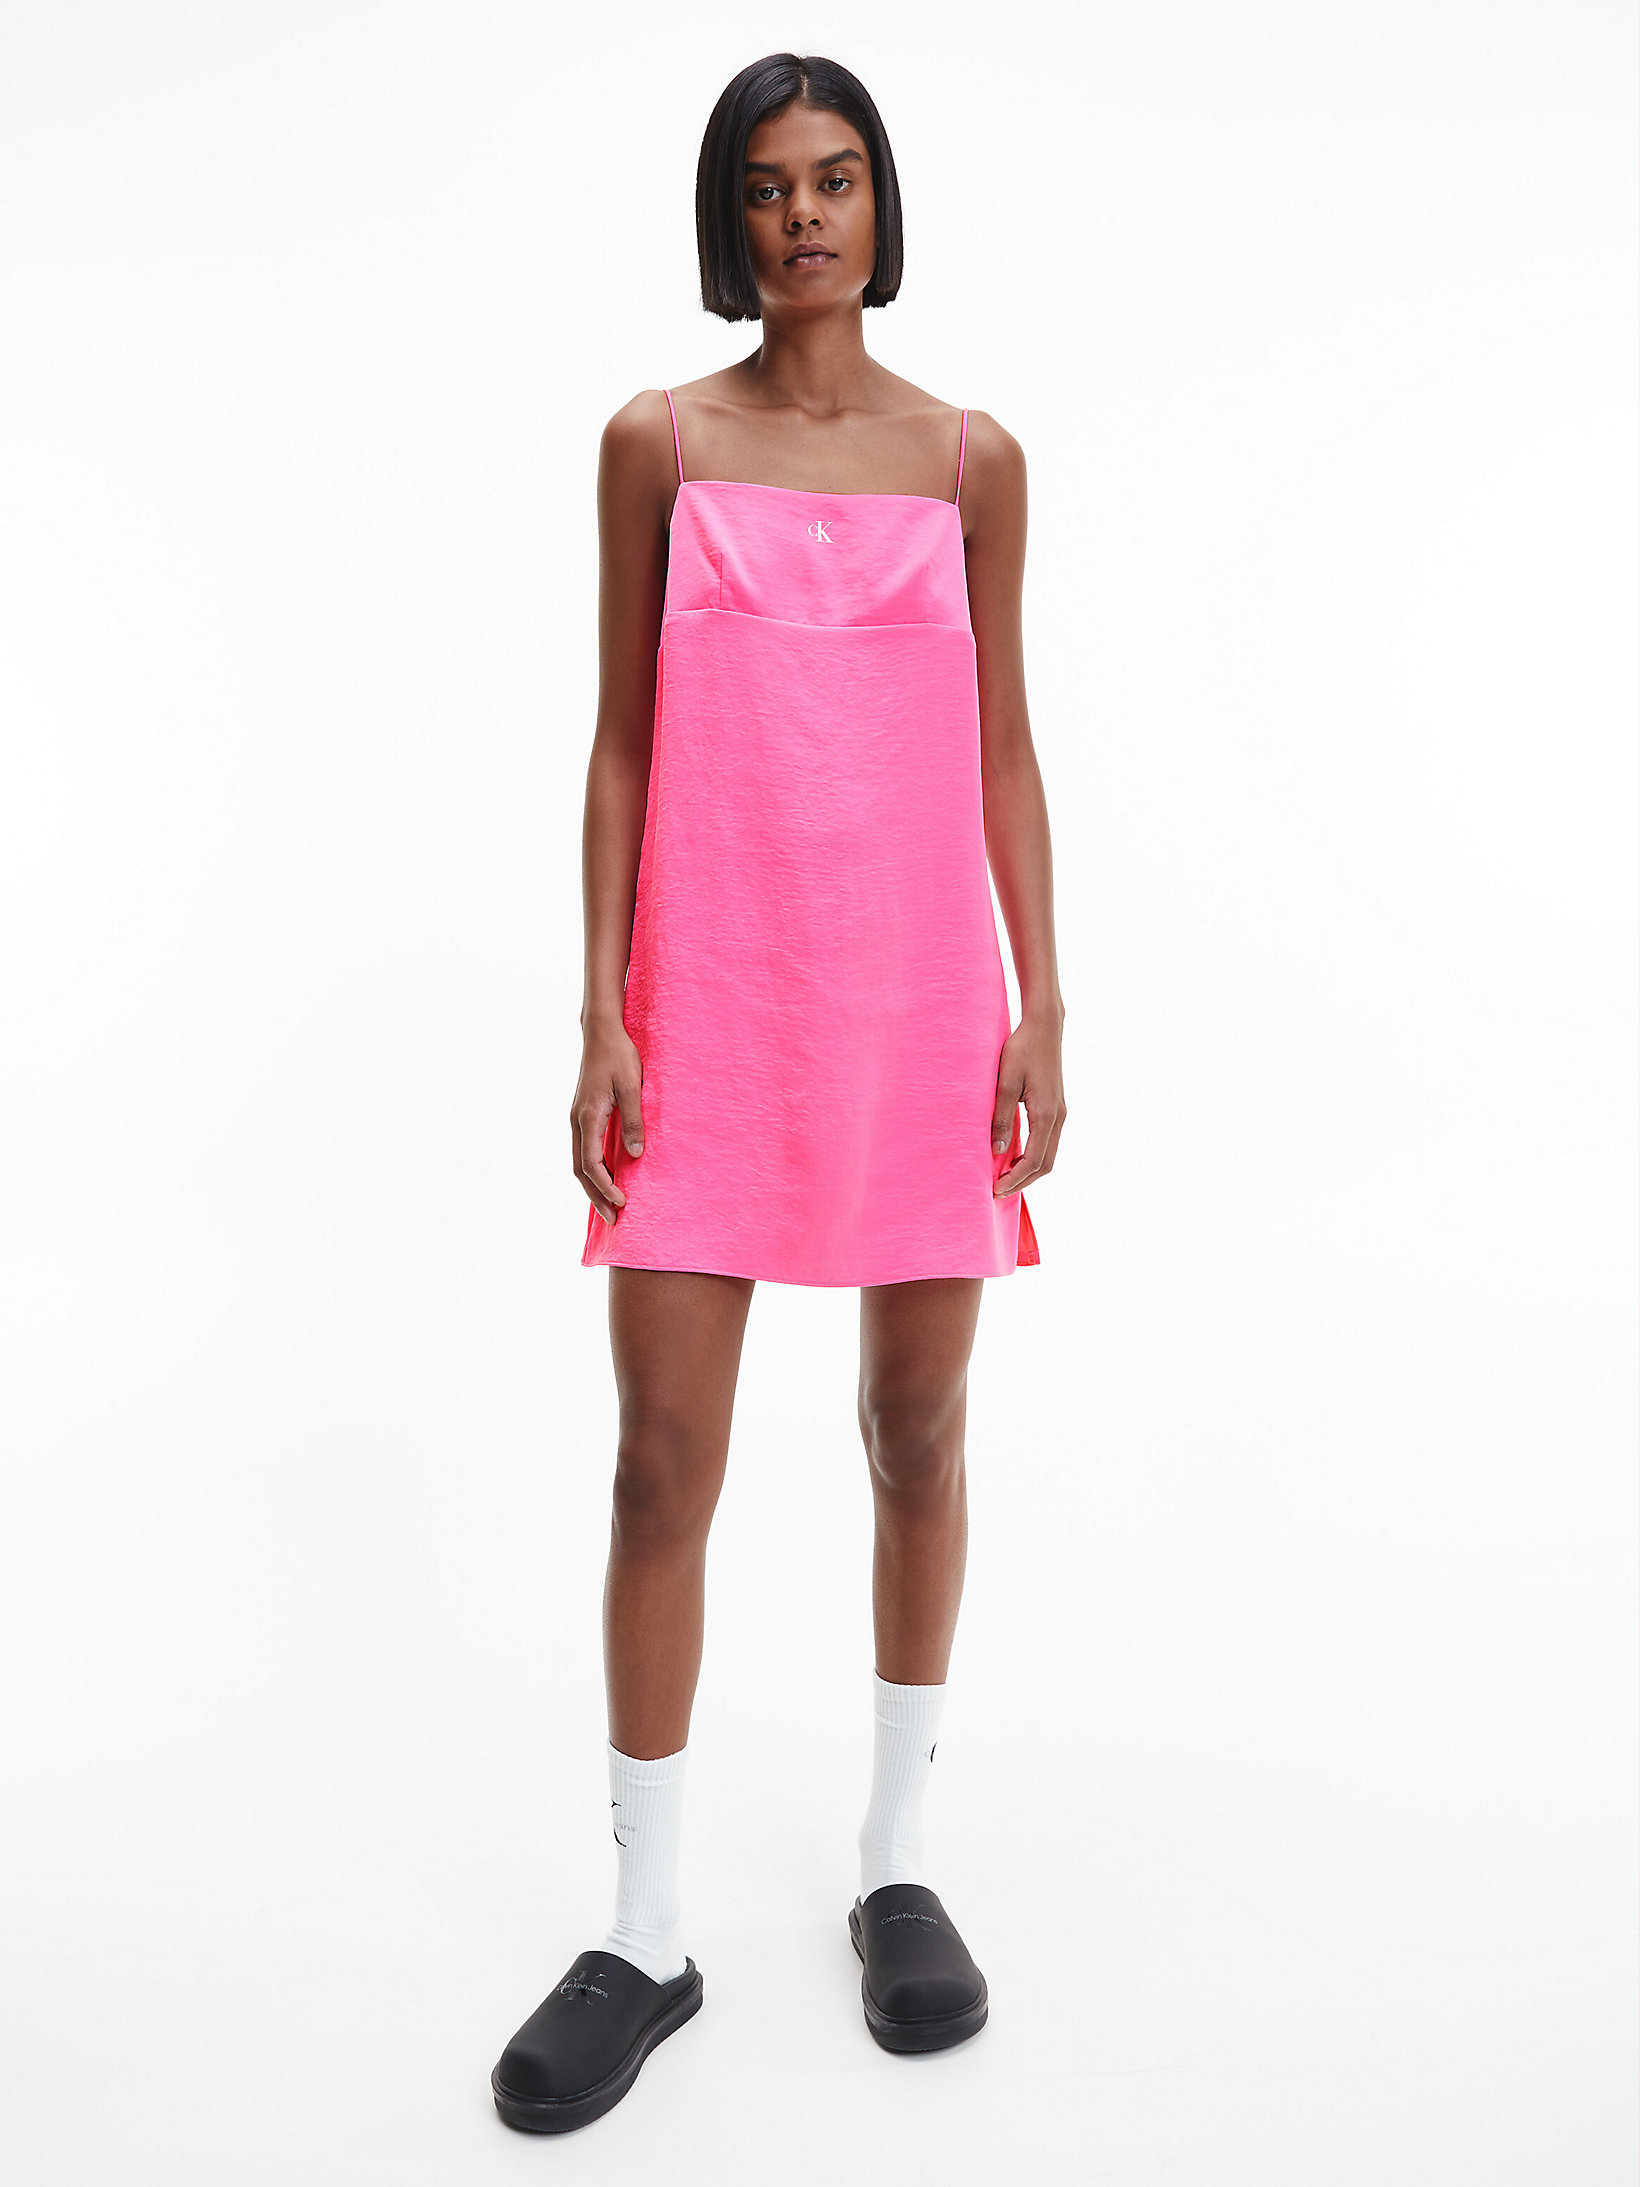 Neon Pink Satin Slip Dress undefined women Calvin Klein